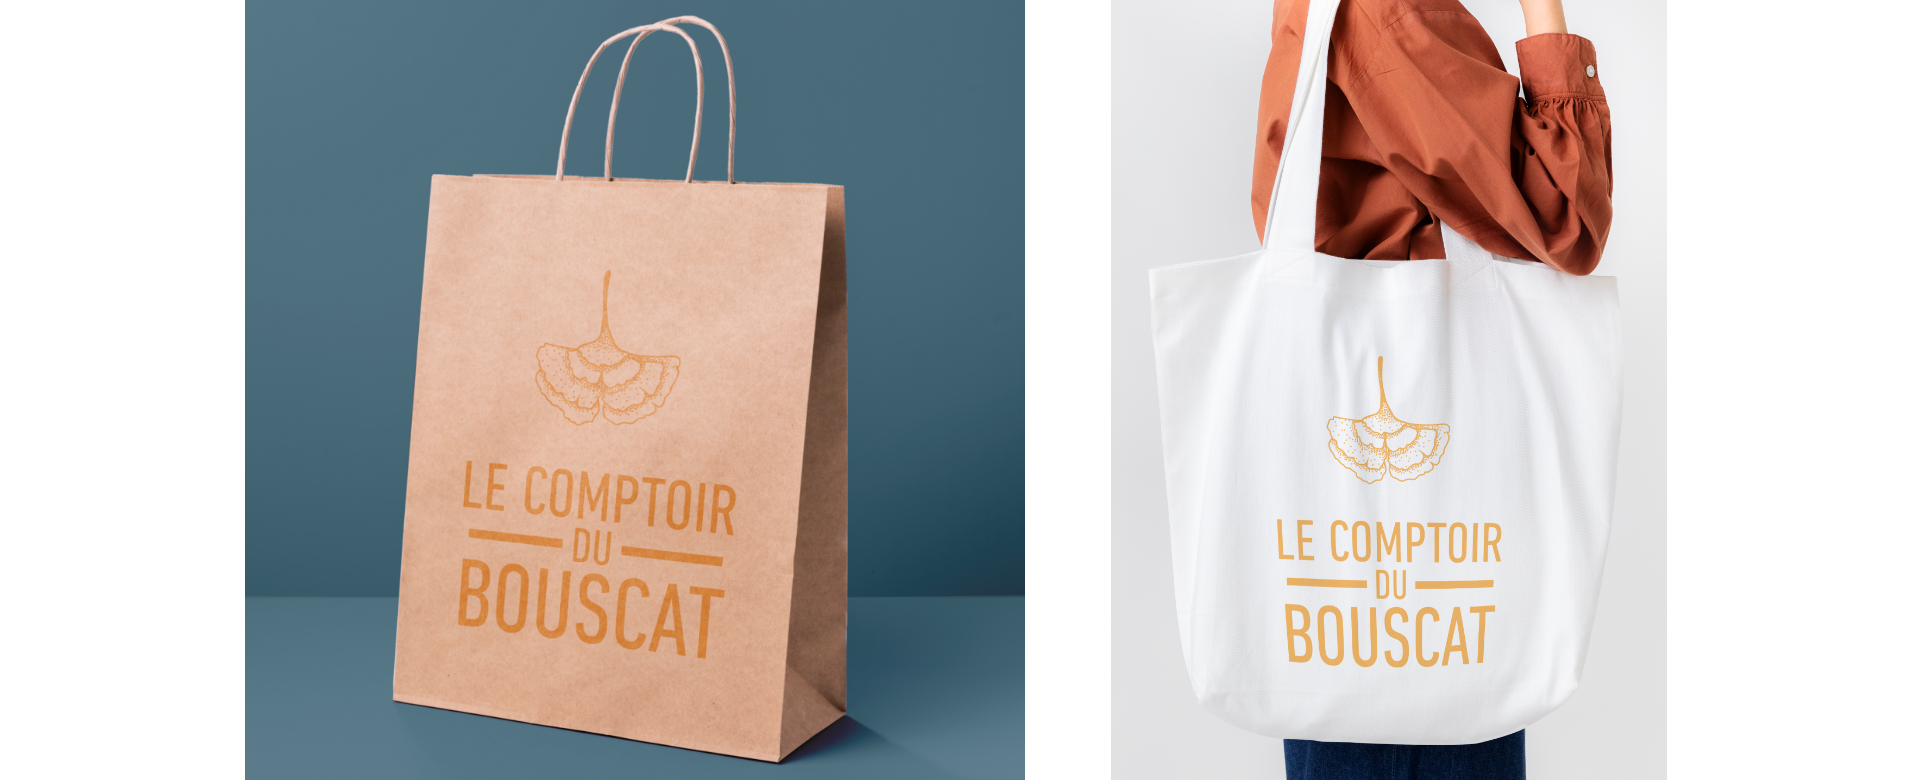 Créations de design pour des accessoires comme des sacs pour le Comptoir du Bouscat